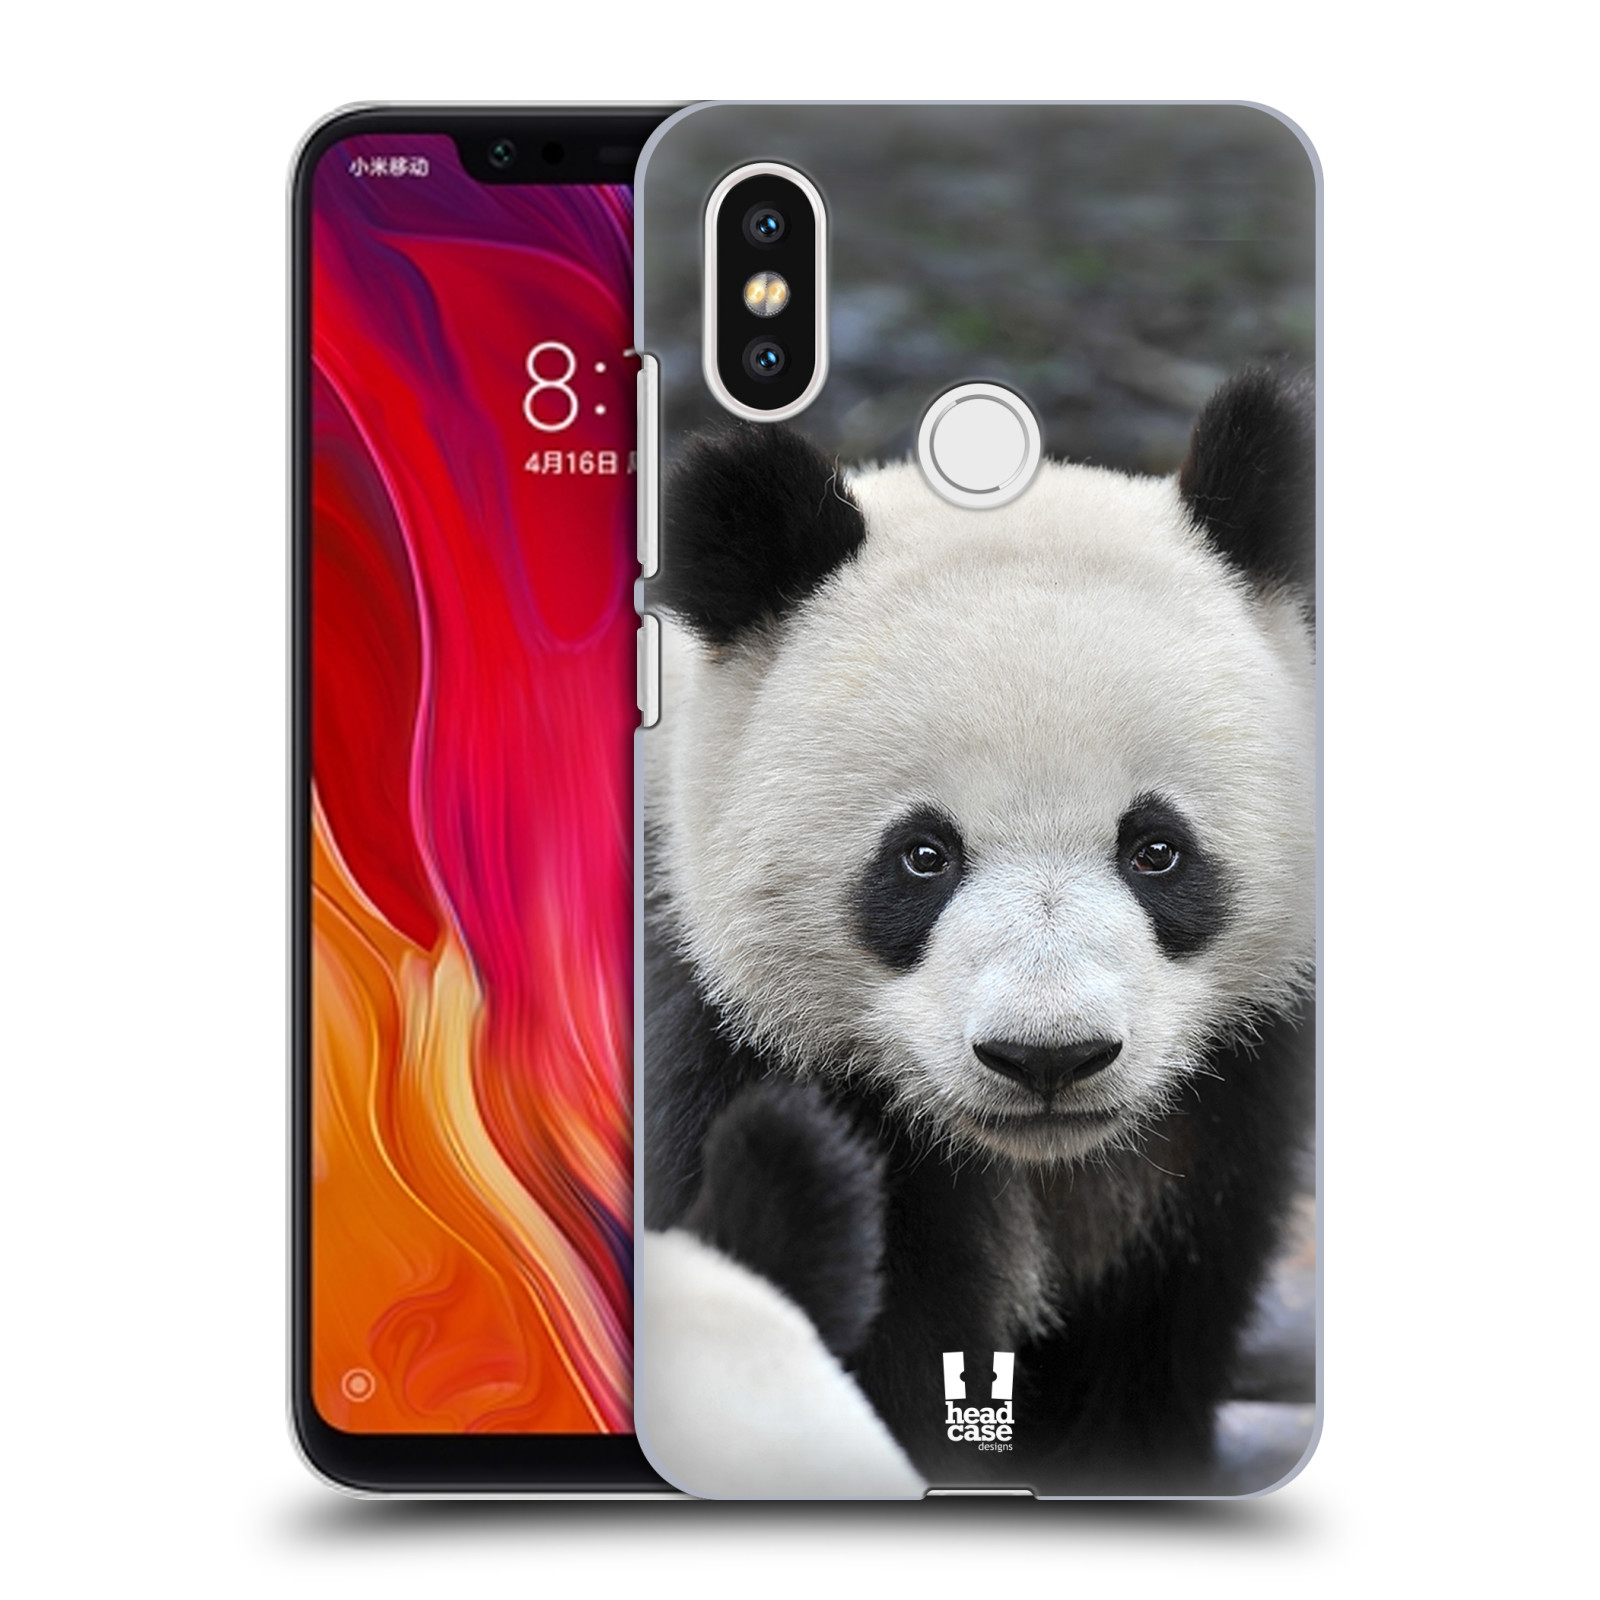 Zadní obal pro mobil Xiaomi Mi 8 - HEAD CASE - Svět zvířat medvěd panda